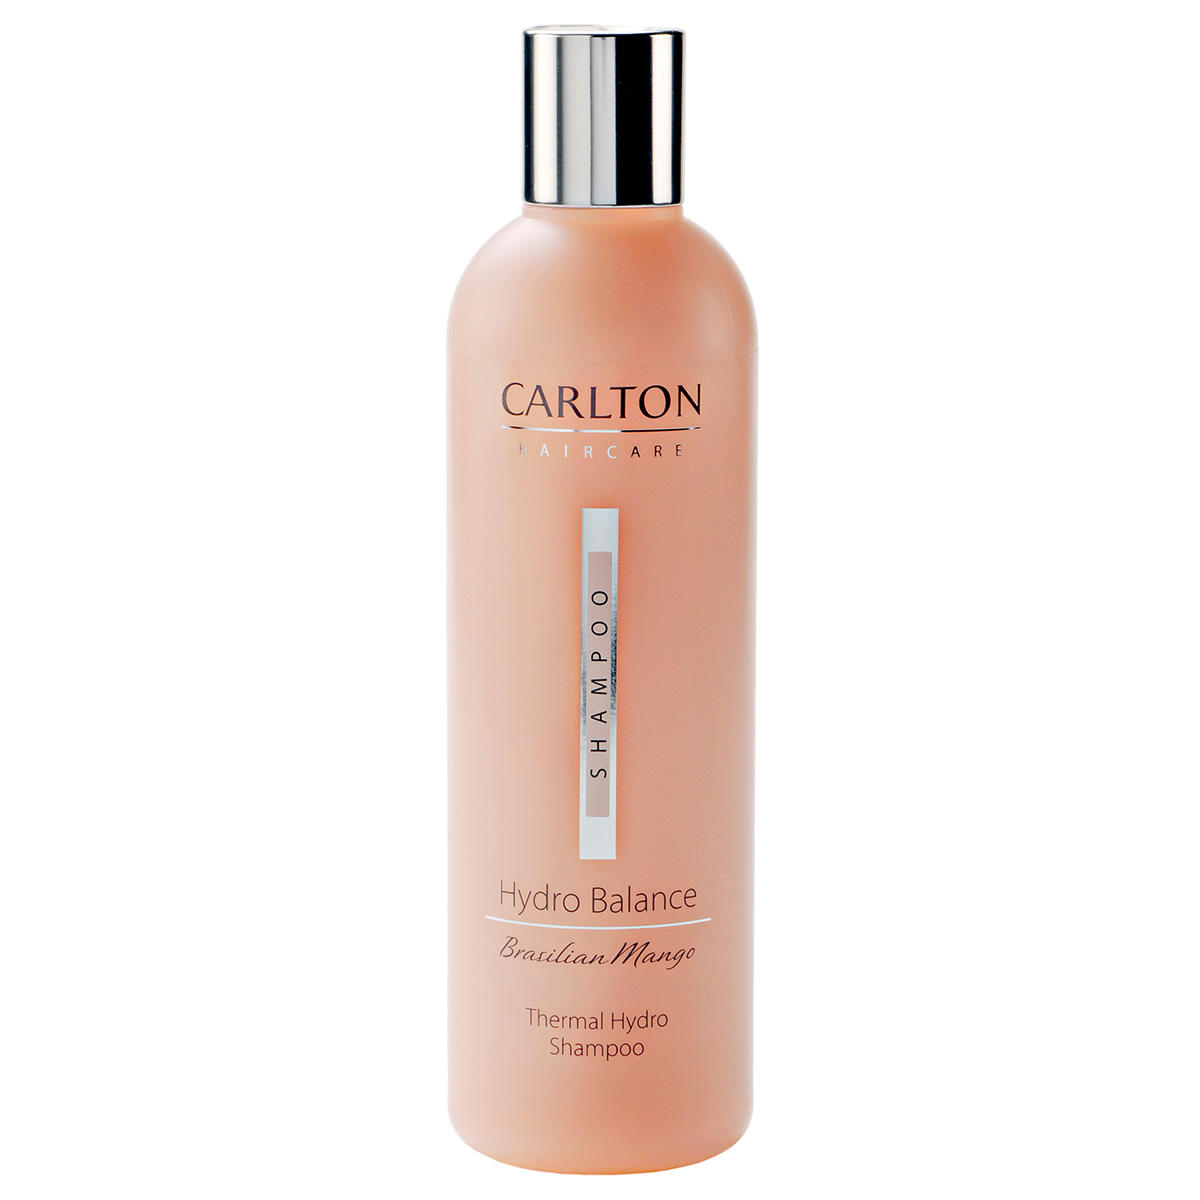 CARLTON Hydro Balance Shampoo 300 ml - 1